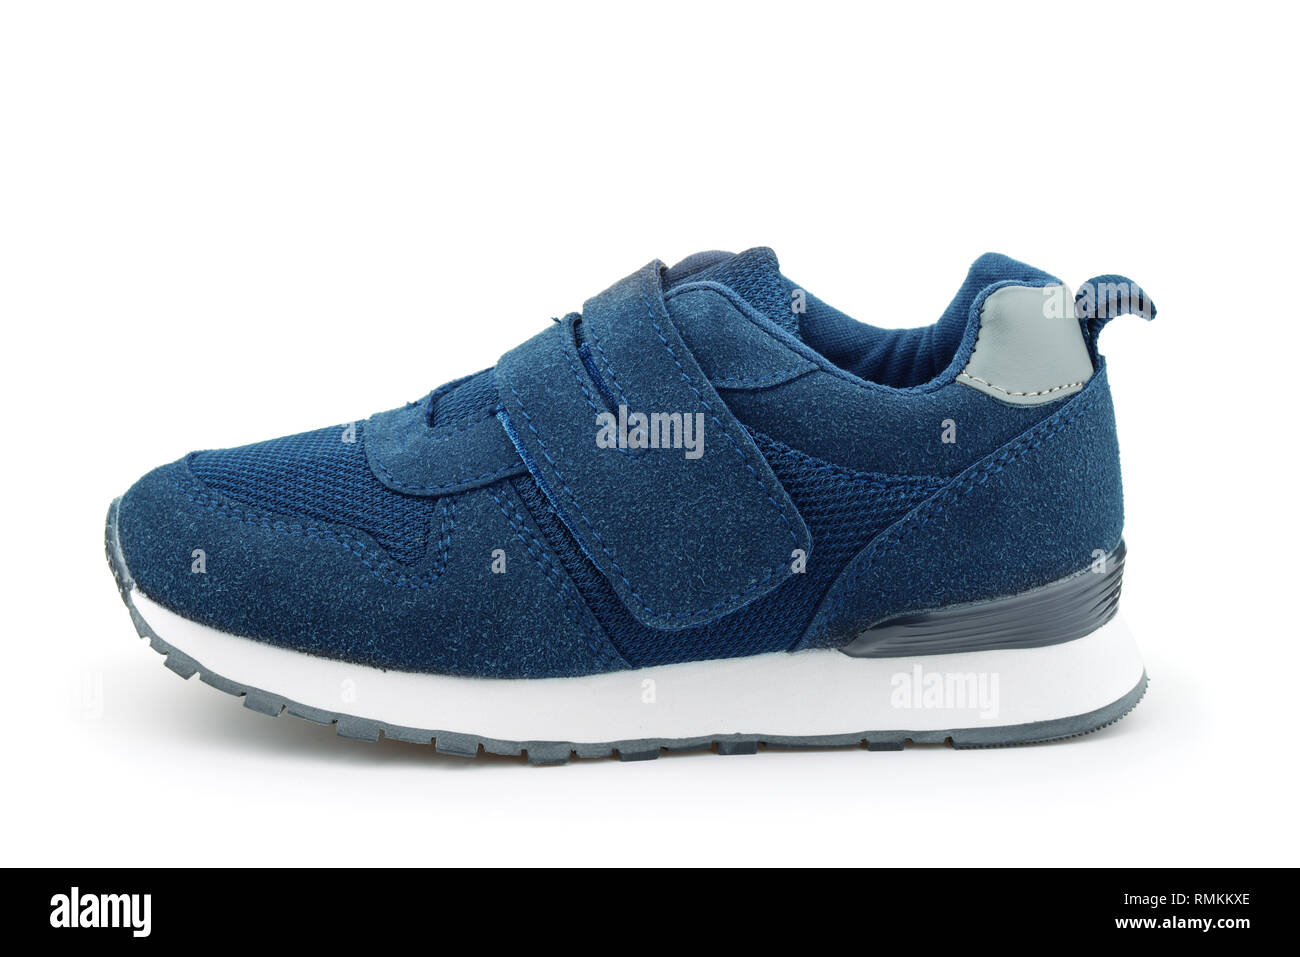 Vue latérale du daim bleu chaussure de sport enfants isolated on white Banque D'Images